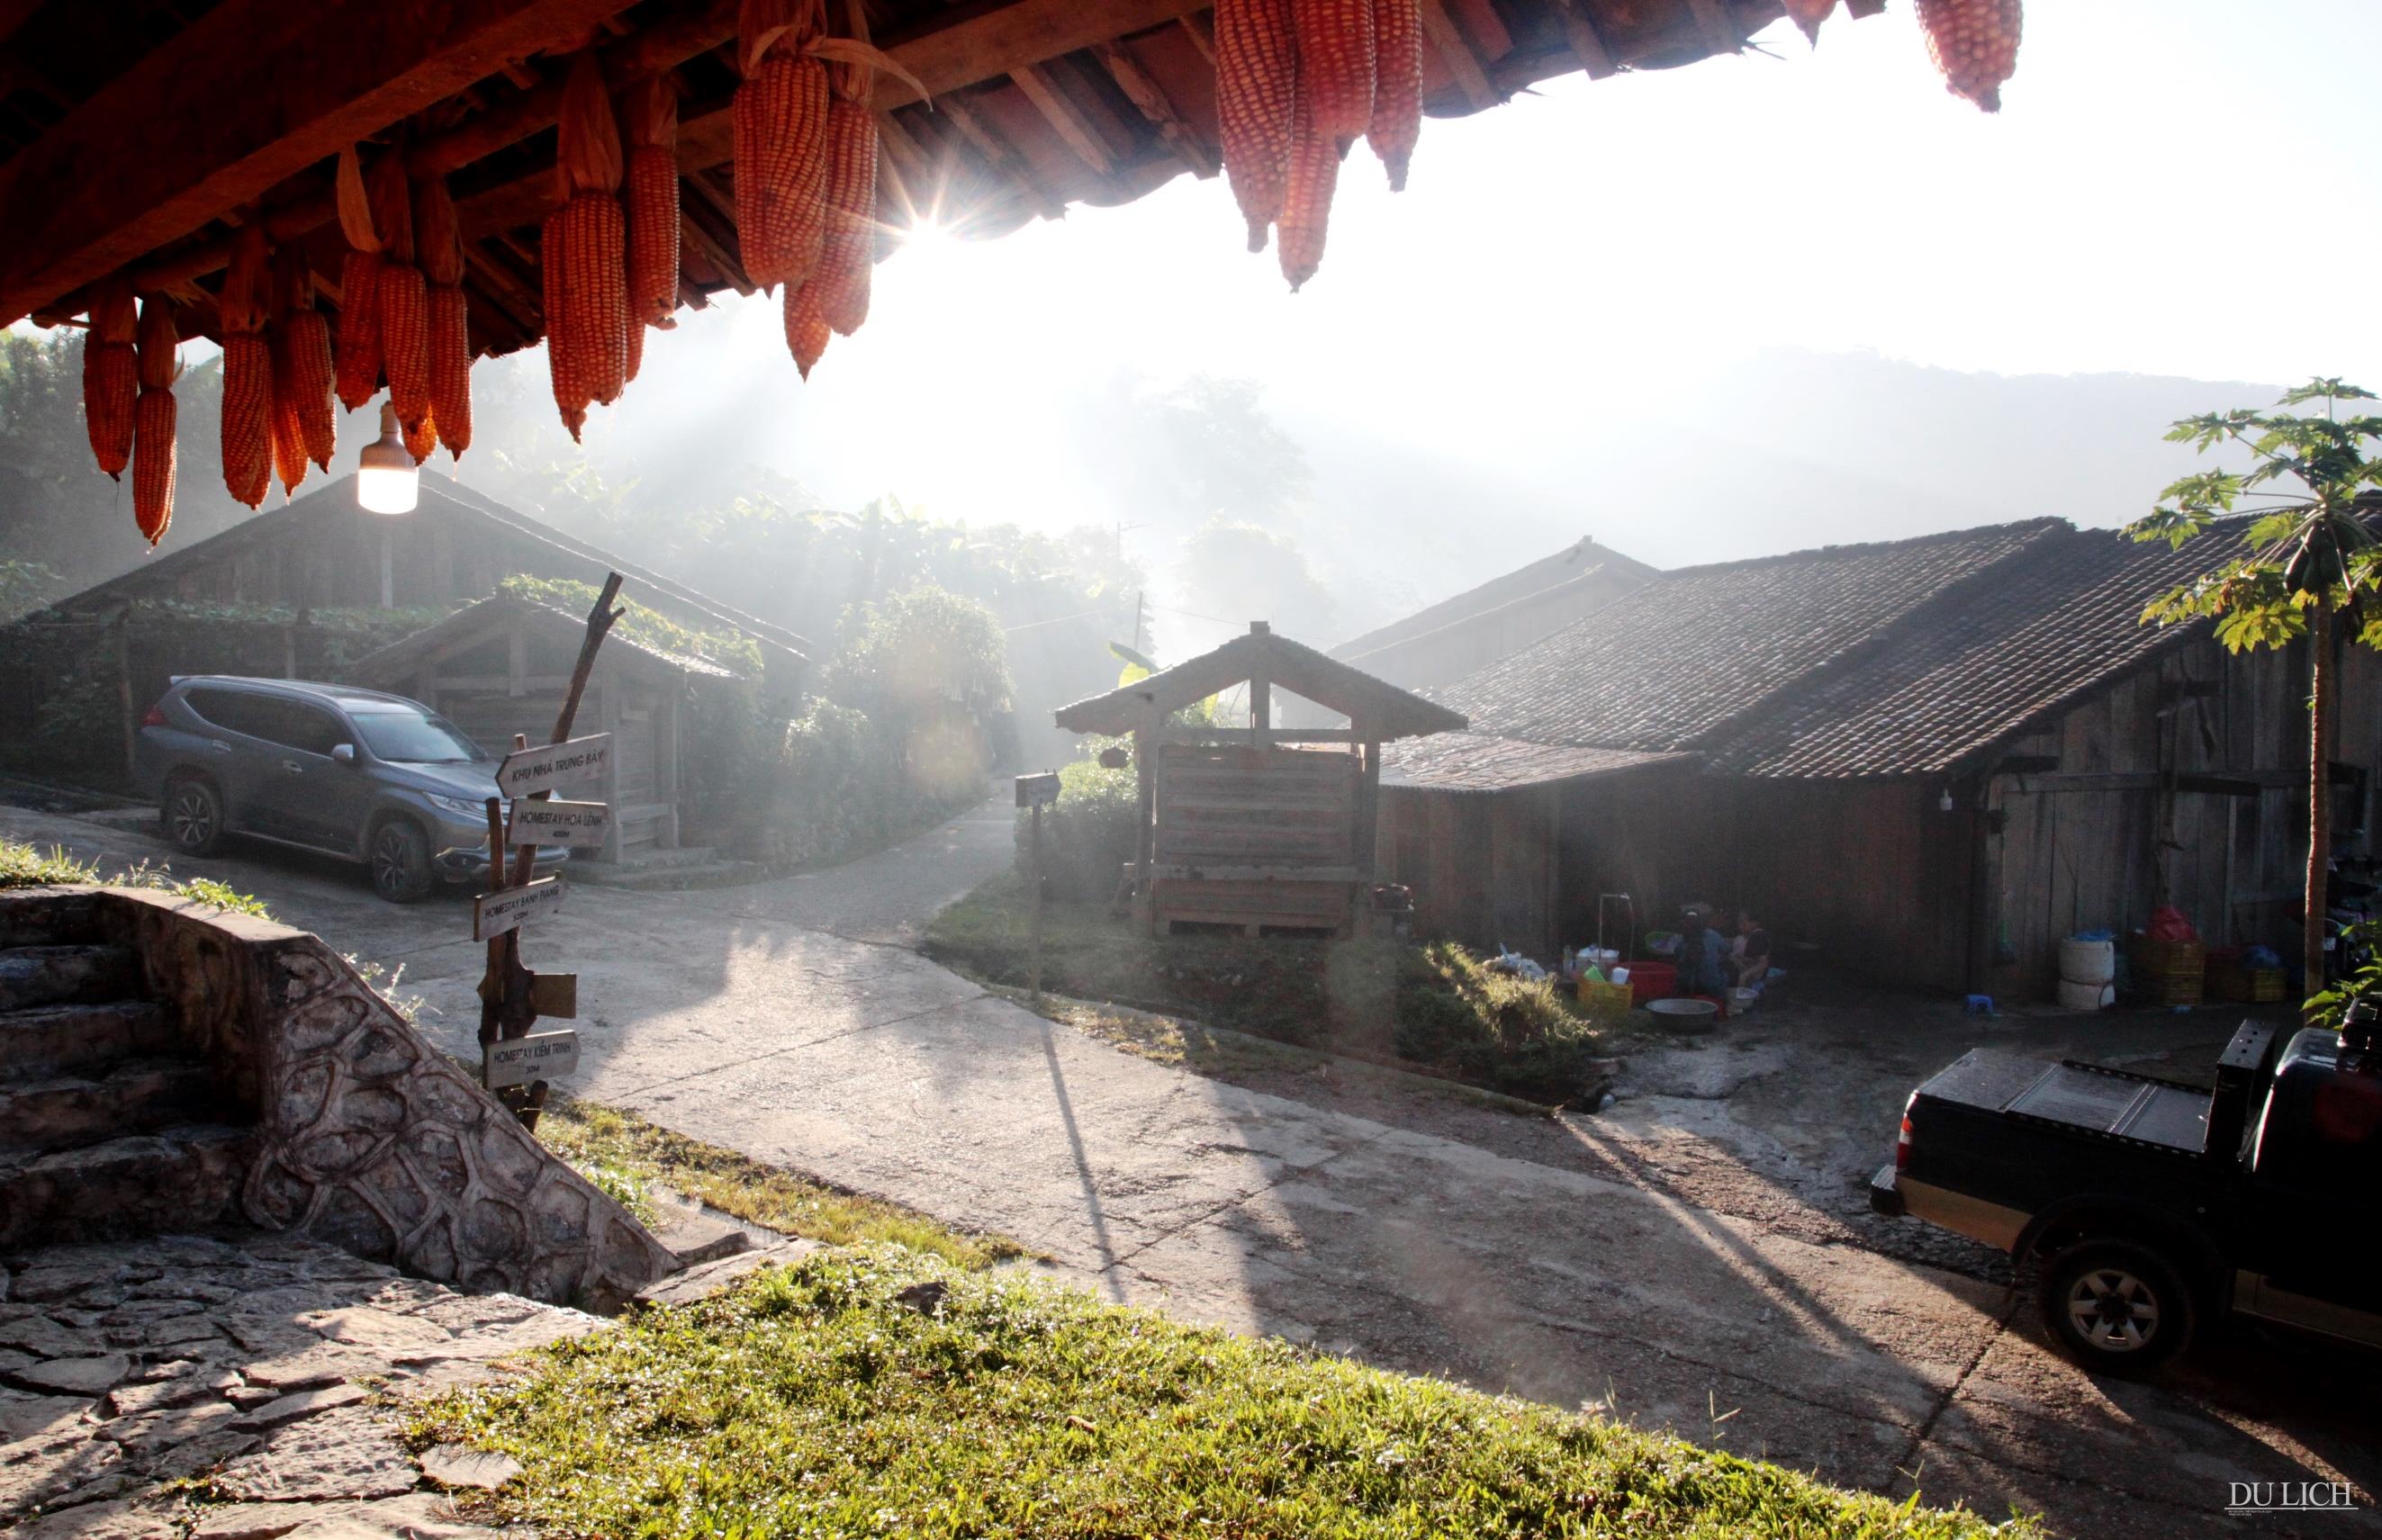  Bình yên buổi sáng ở điểm du lịch cộng đồng Hoài Khao – Nguyên Bình